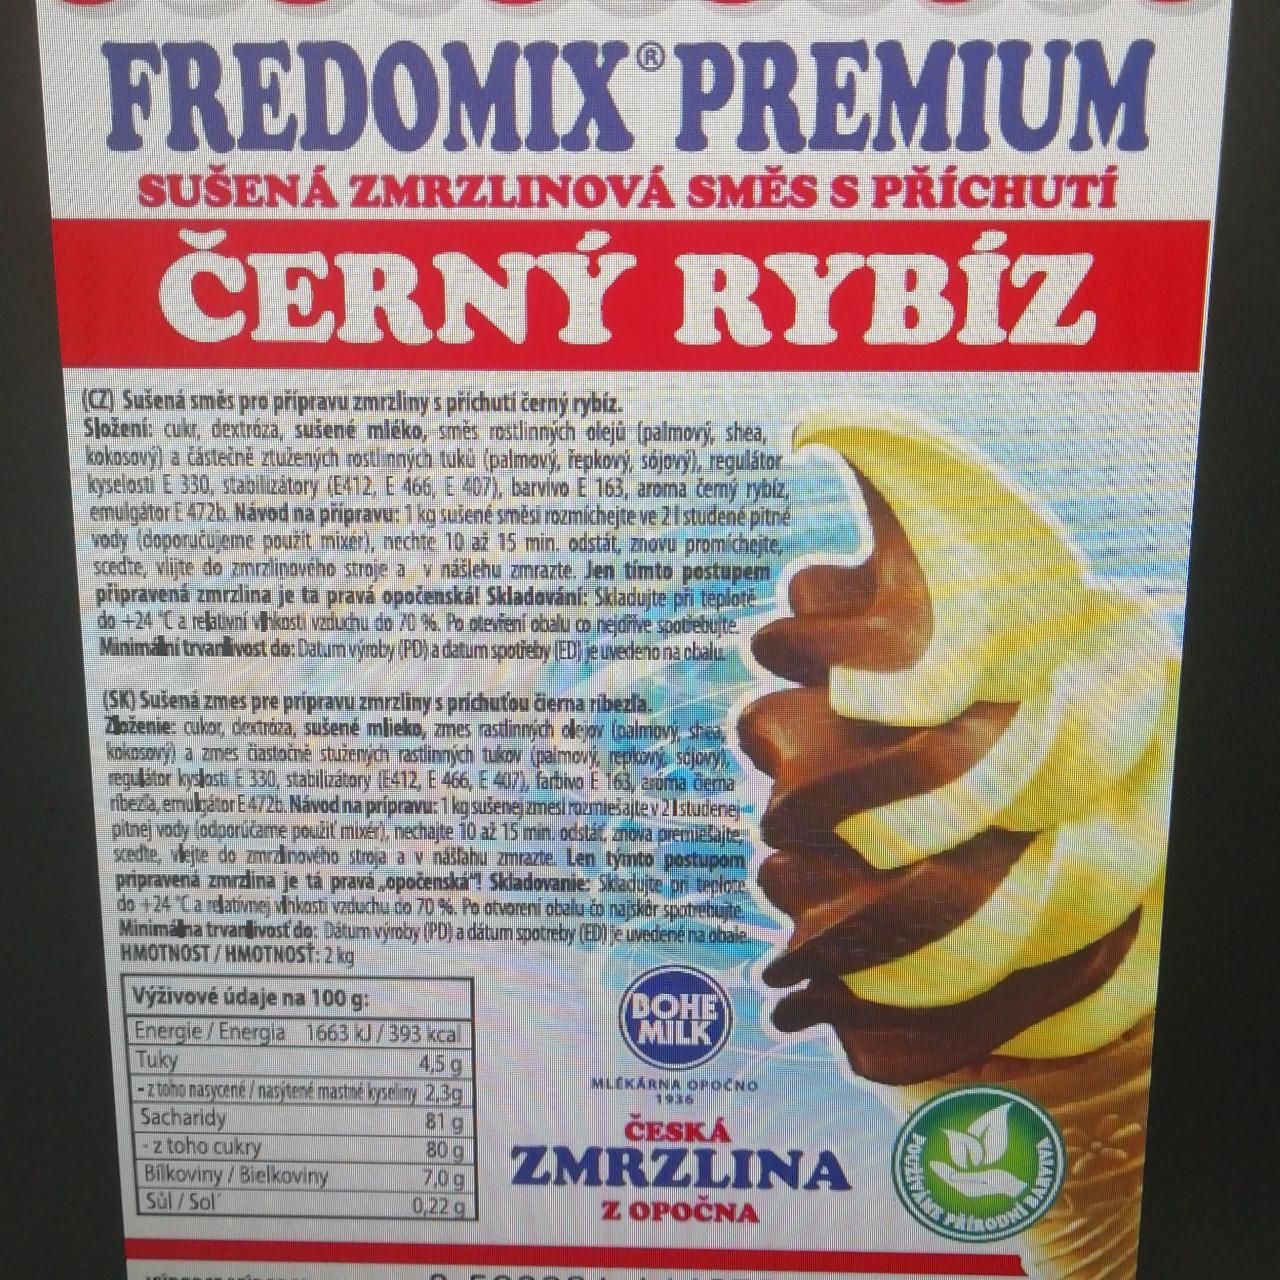 Fotografie - Fredomix Premium Točená zmrzlina Opočno černý rybíz